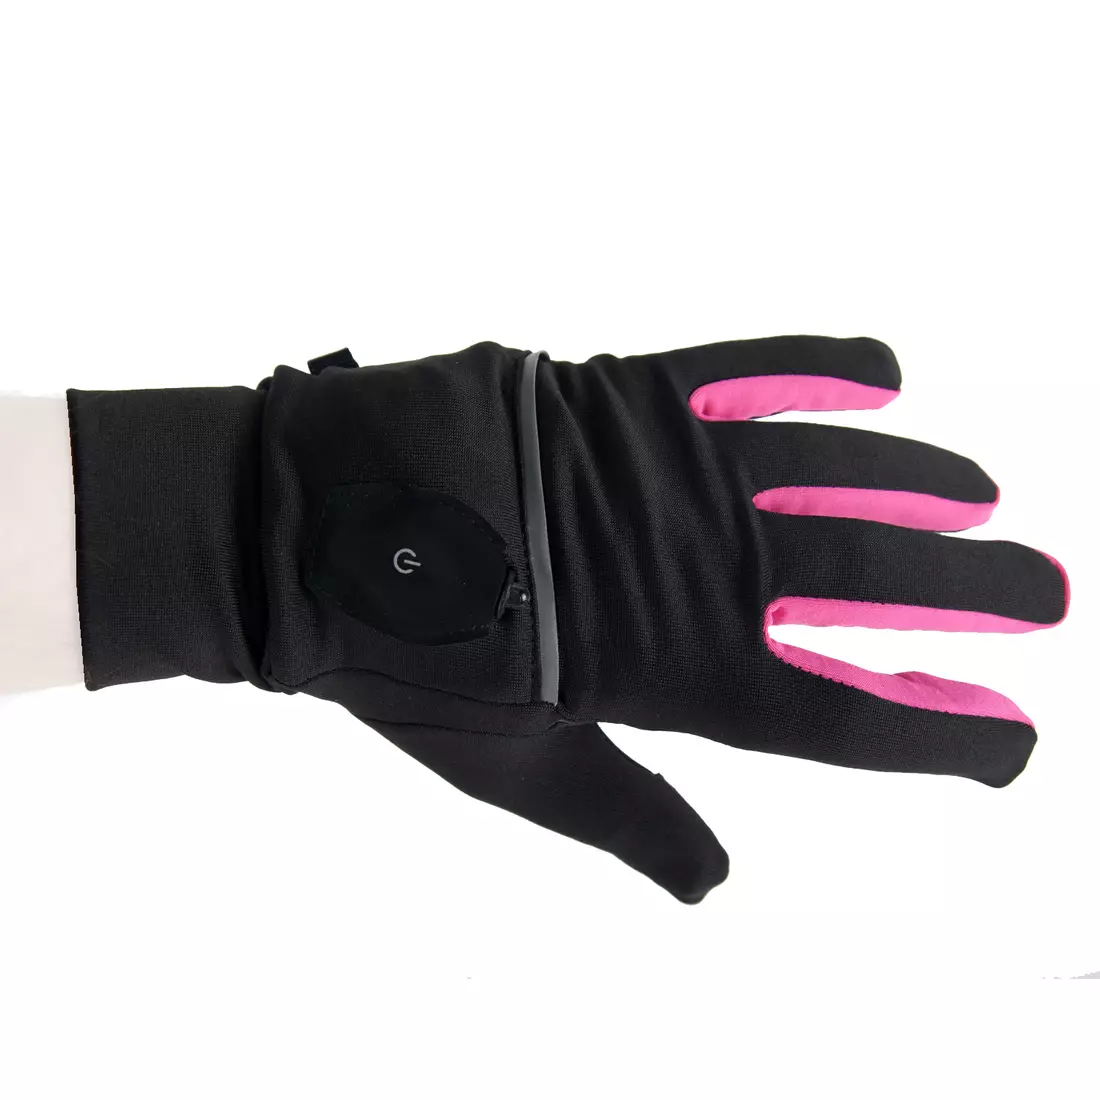 VIKING Winterhandschuhe, LED, Abdeckung, VERMONT140/20/0011/42 rosa-schwarz